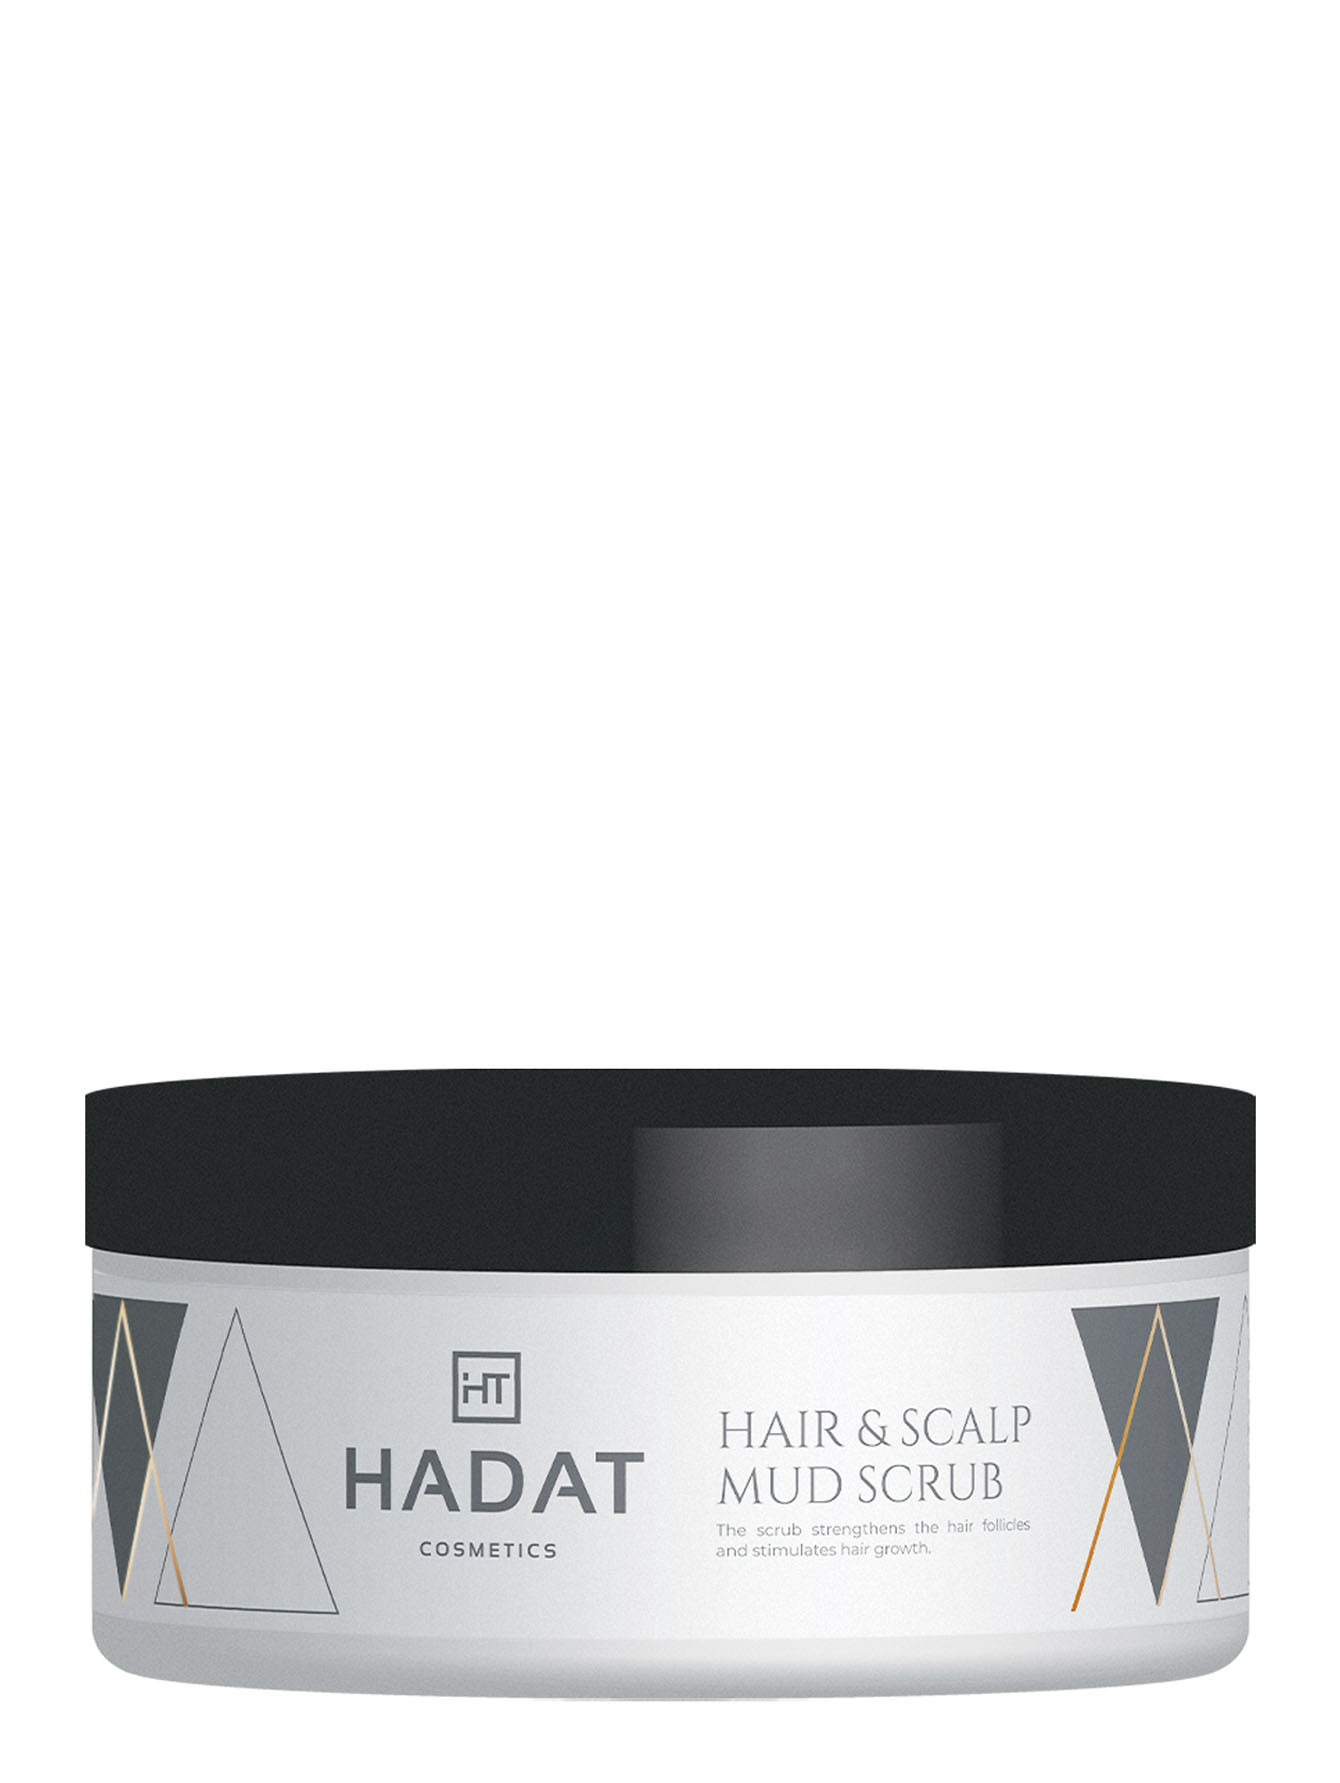 Скраб для волос и кожи головы с морской солью Hair & Scalp Mud Scrab, 300 мл - Общий вид